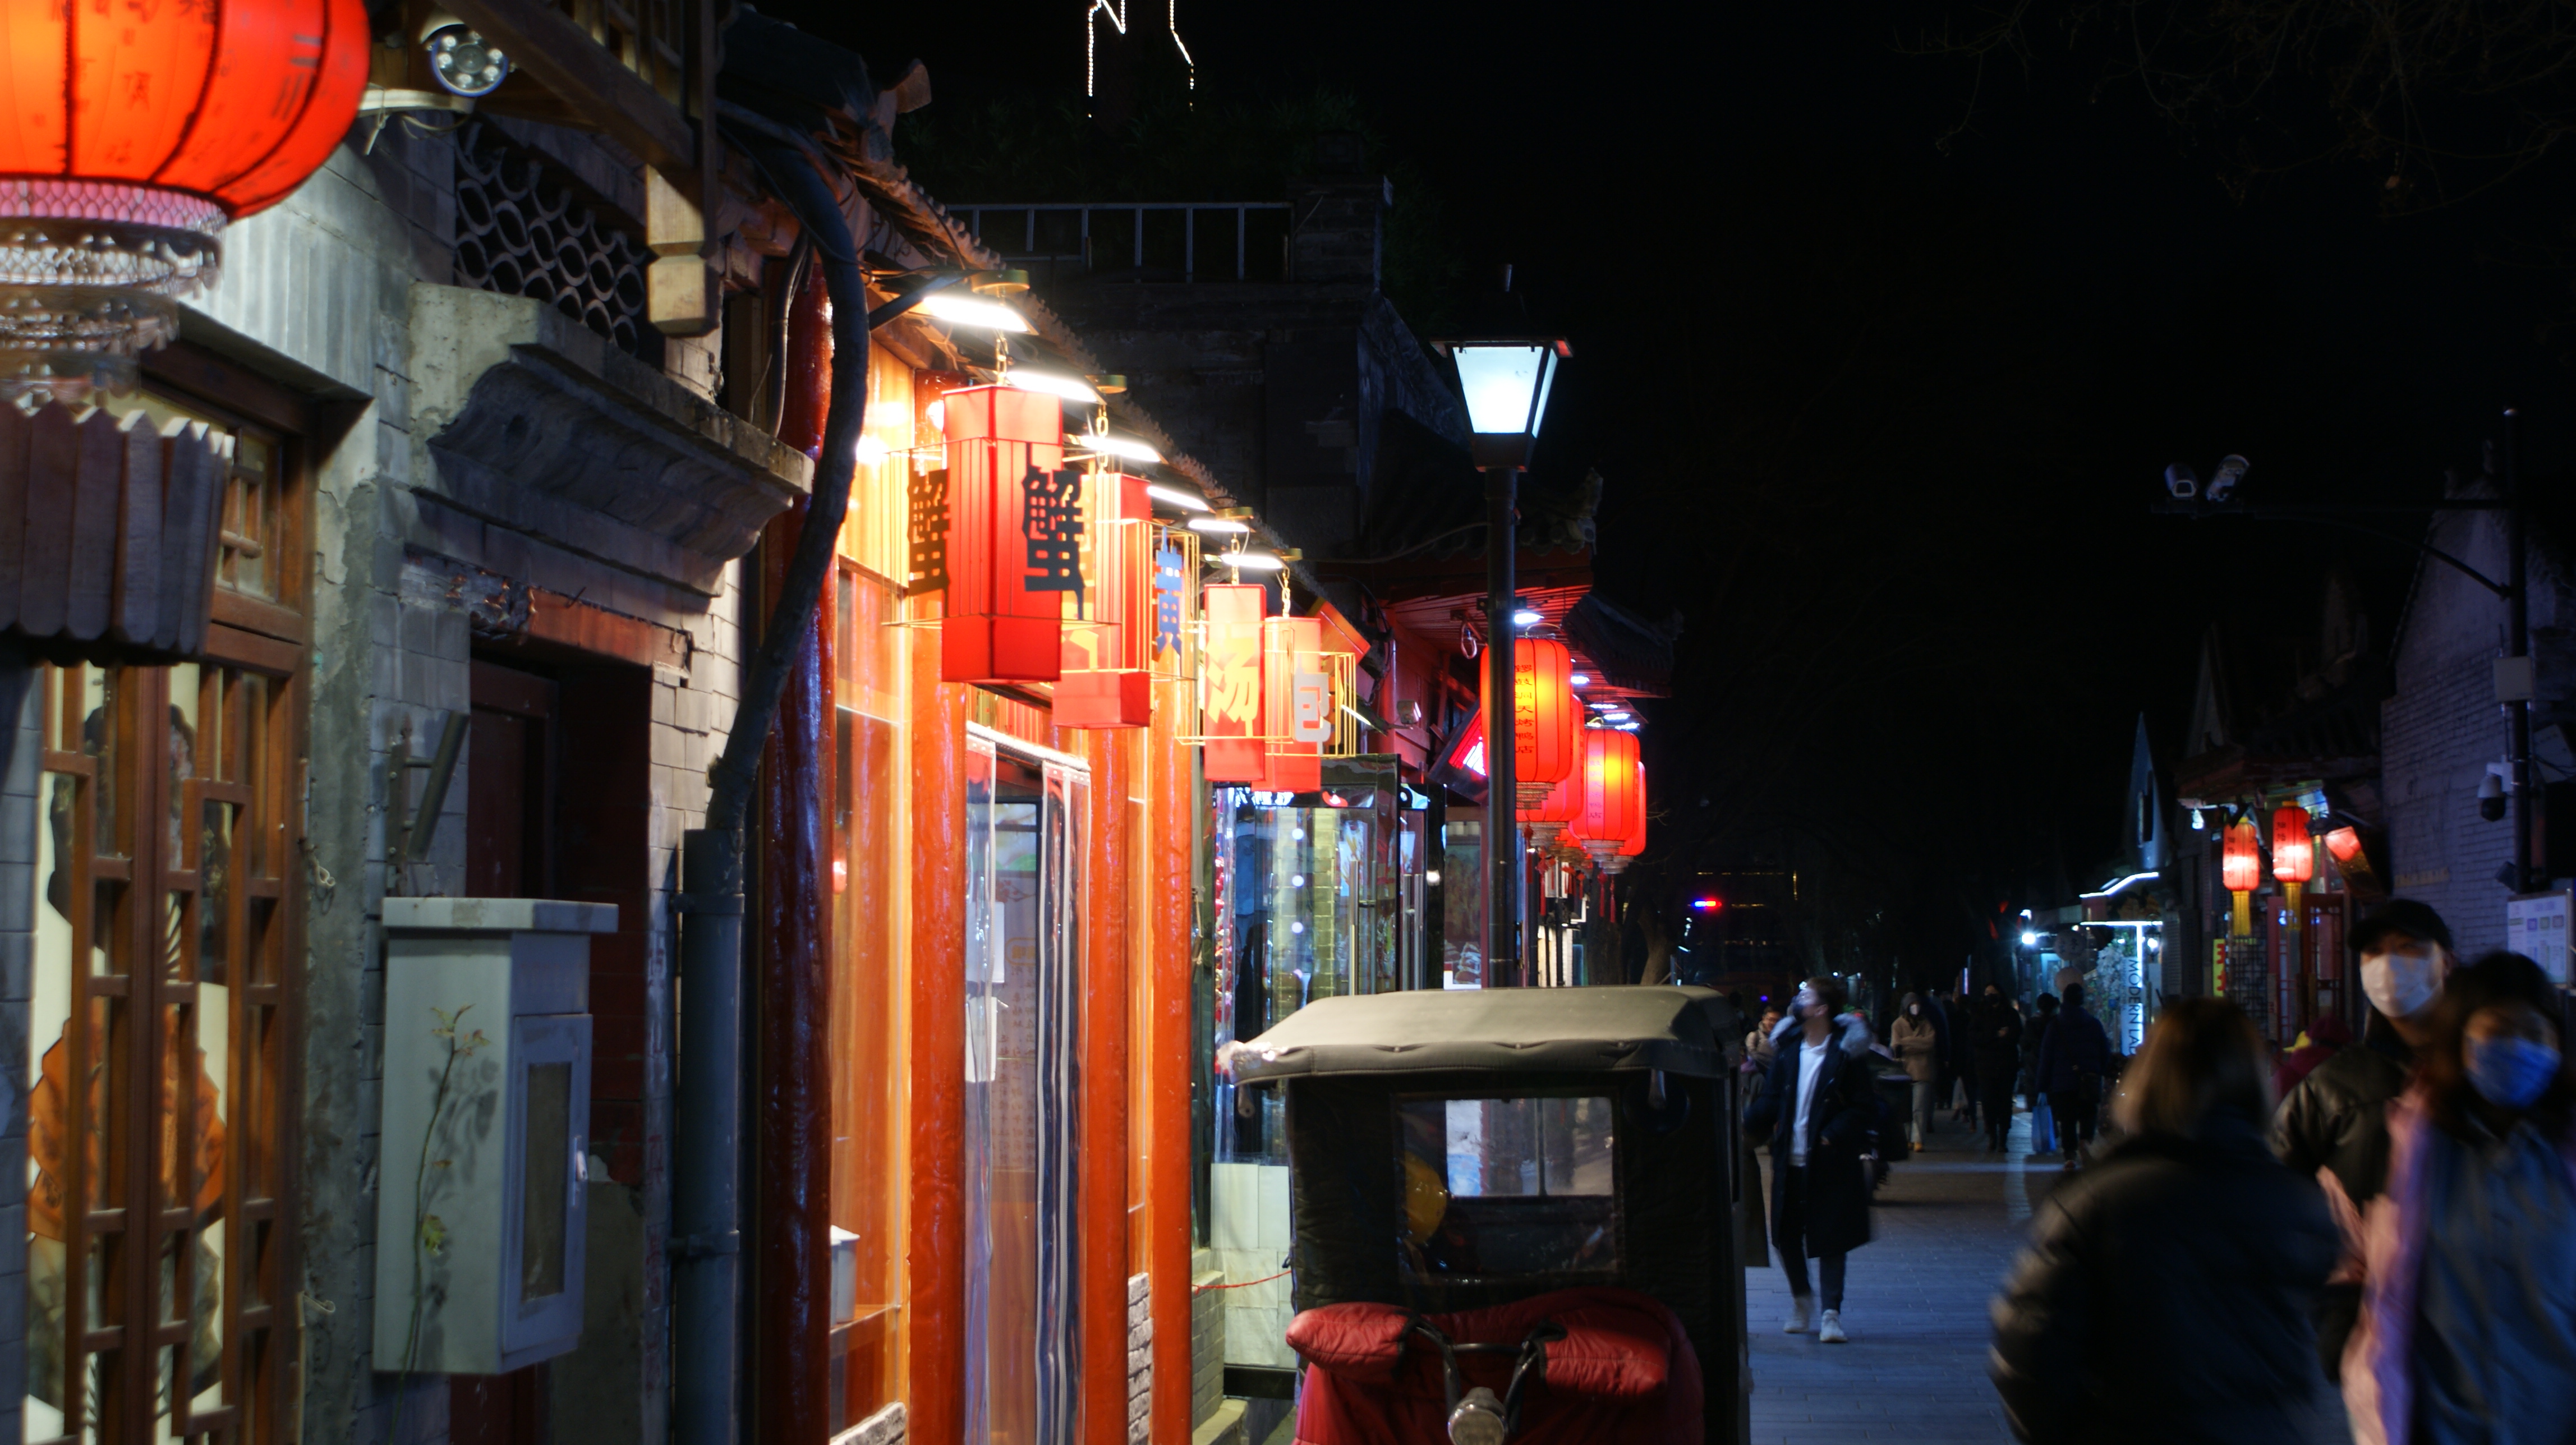 北京夜景 南锣鼓巷图片